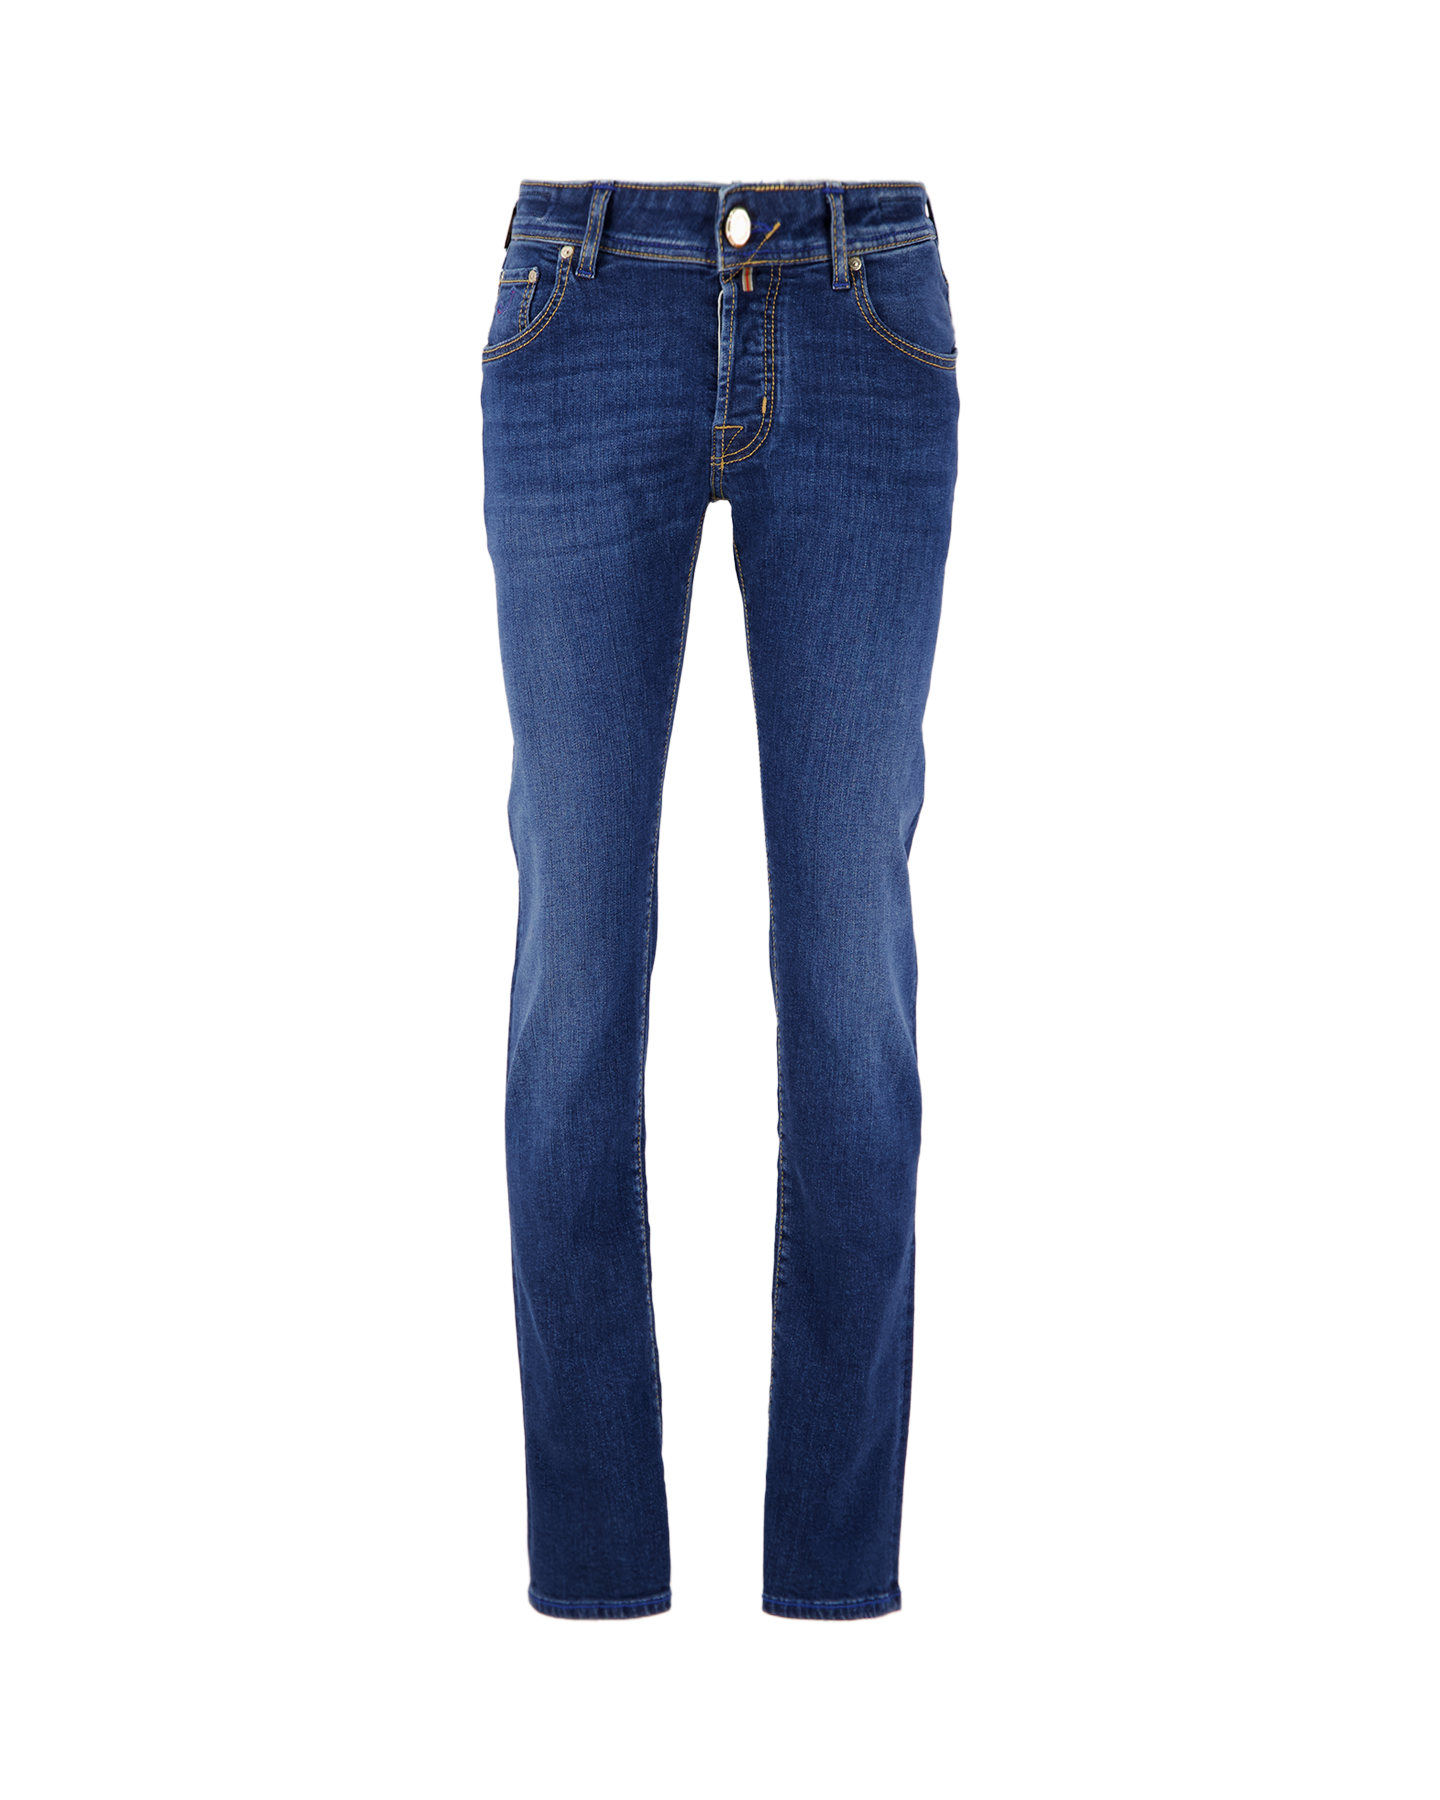 Jacob Cohen Nick Mid-Blue Selvedge Limited-Edition Jeans 778D DENIM 1